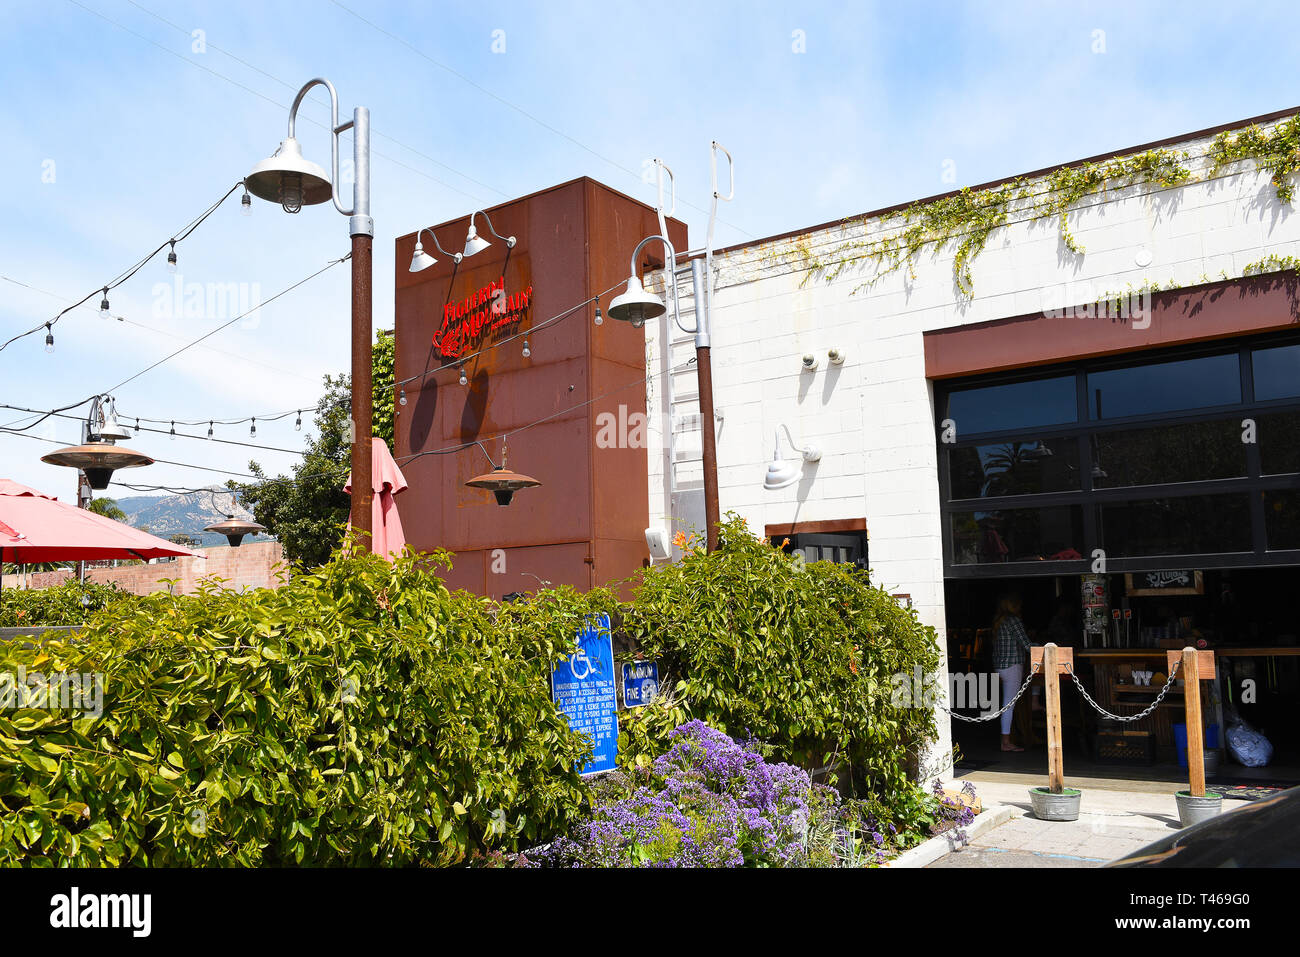 SANTA BARBARA, CALIFORNIE - Le 11 avril 2019 : l'affaire Figueroa Mountain Brewing Company à Santa Barbara dispose de piscines intérieure et extérieure avec coin bières sur t Banque D'Images